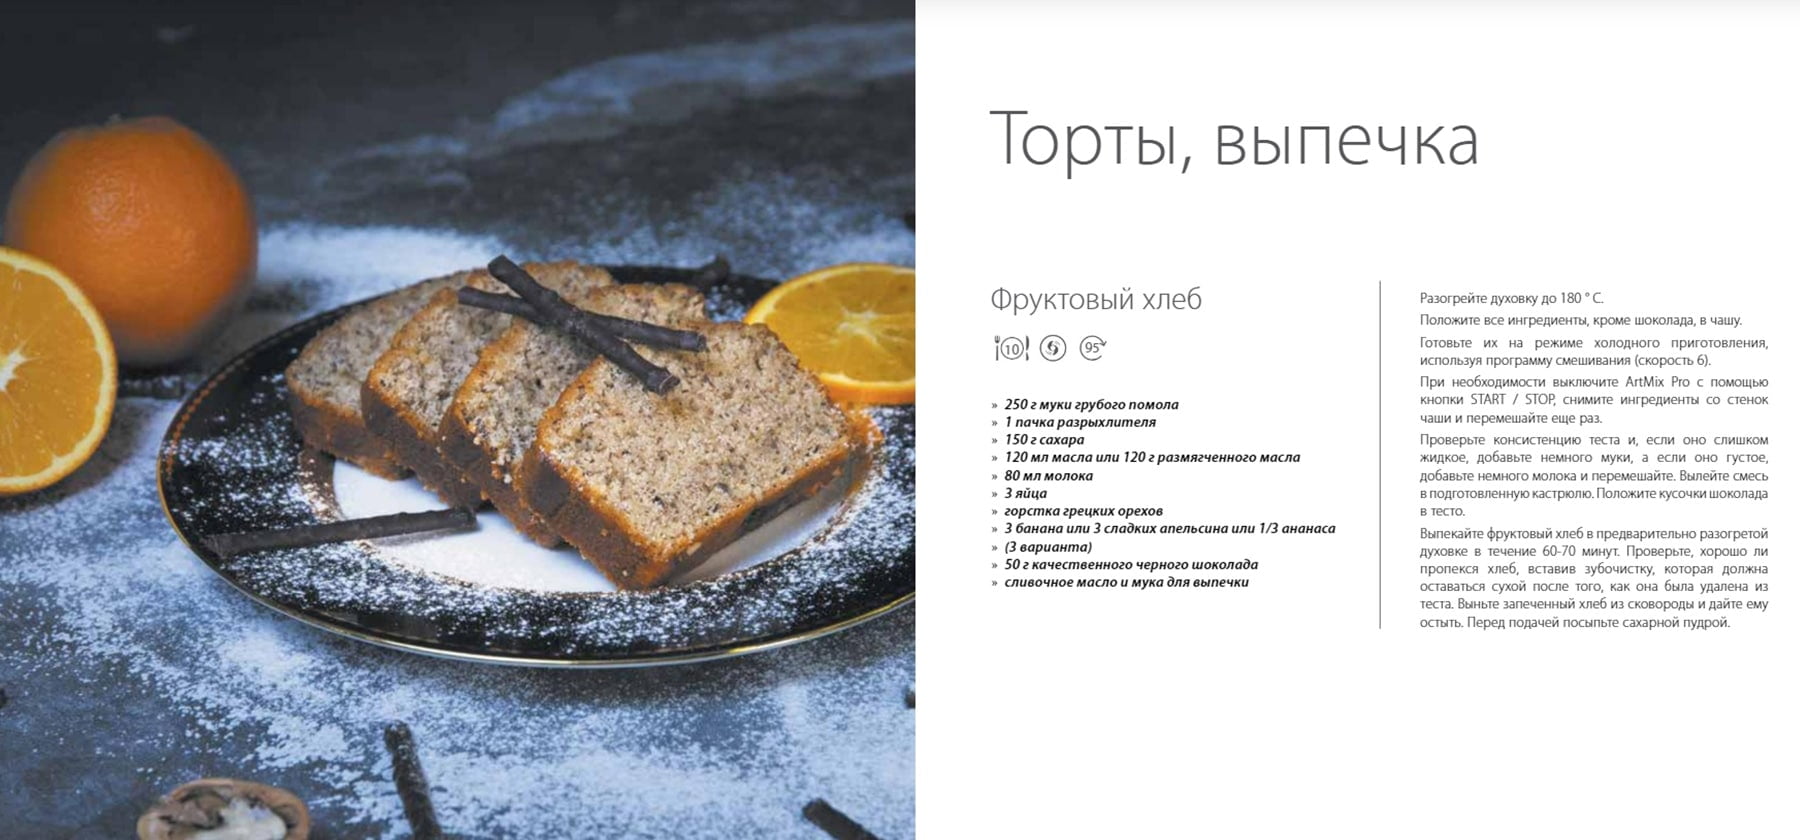 Рецепты Тортов и выпечки от Цептер